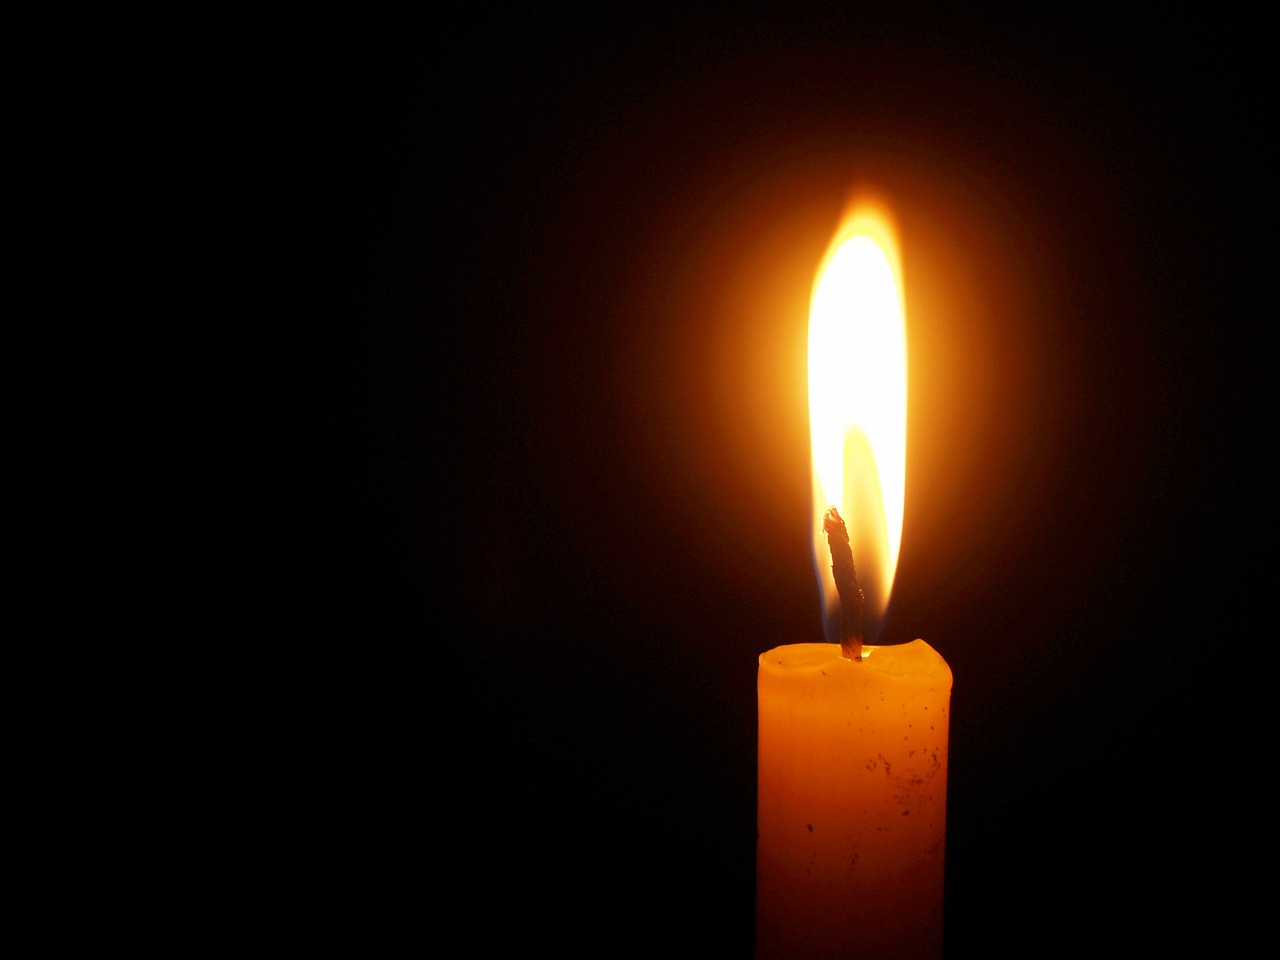 40ημερο μνημόσυνο θα τελεστεί το Κυριακή 13 Μαρτίου εις μνήμην του Κοσμά Γελαδάρα